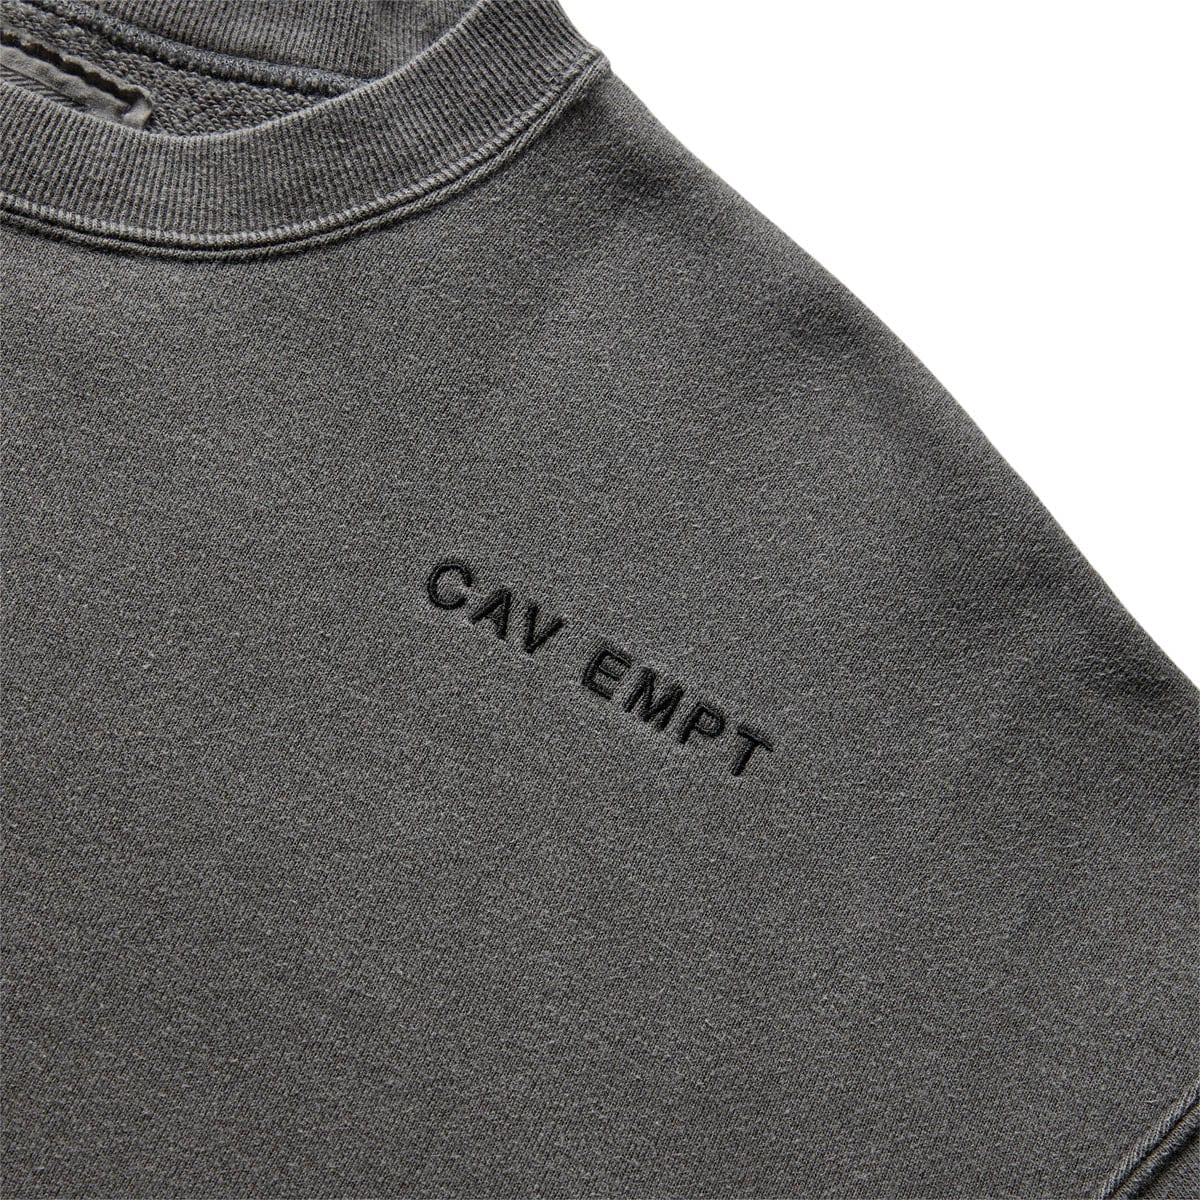 Cav Empt Hoodies & Sweatshirts OVERDYE //// CREW NECK